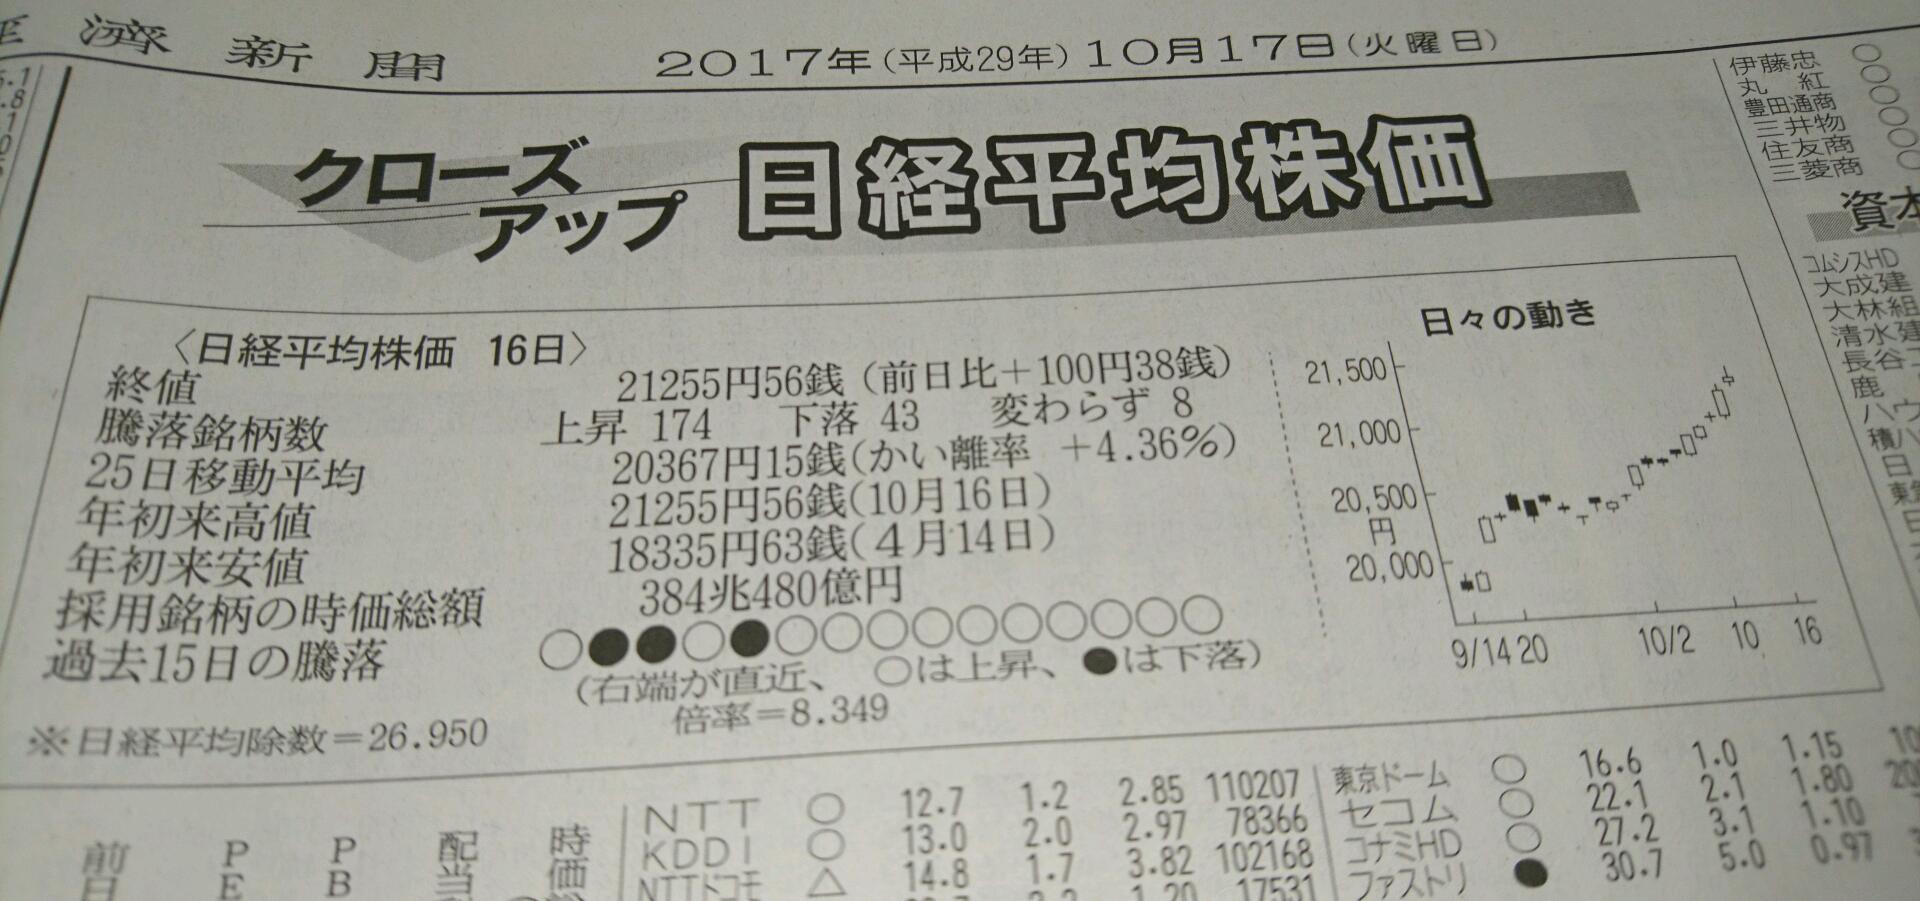 日経平均株価10連騰